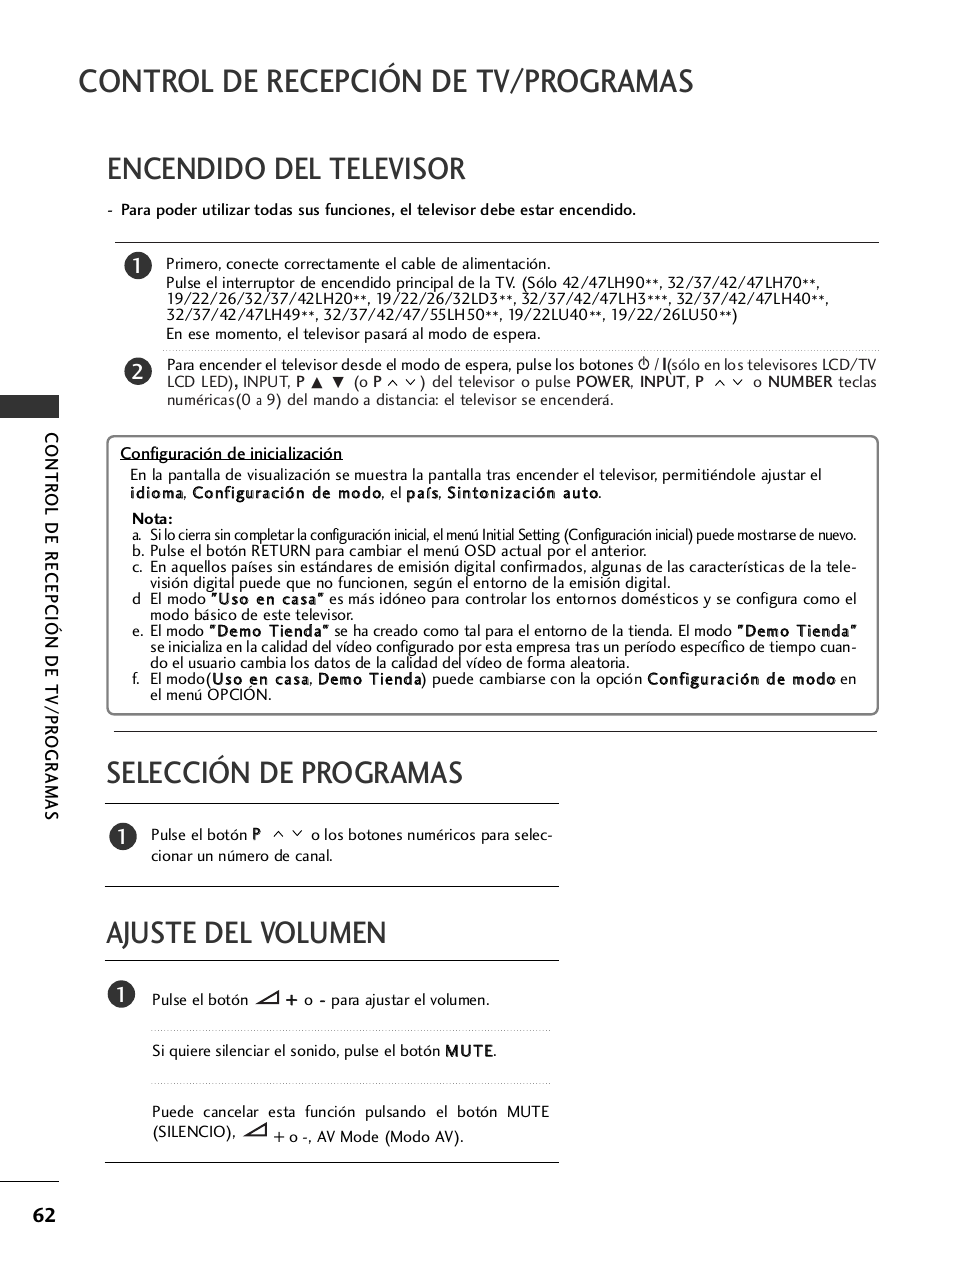 Encendido del televisor, Selección de programas, Ajuste del volumen | Control de recepción de tv/programas | LG 32LH40 Manual del usuario | Página 64 / 180